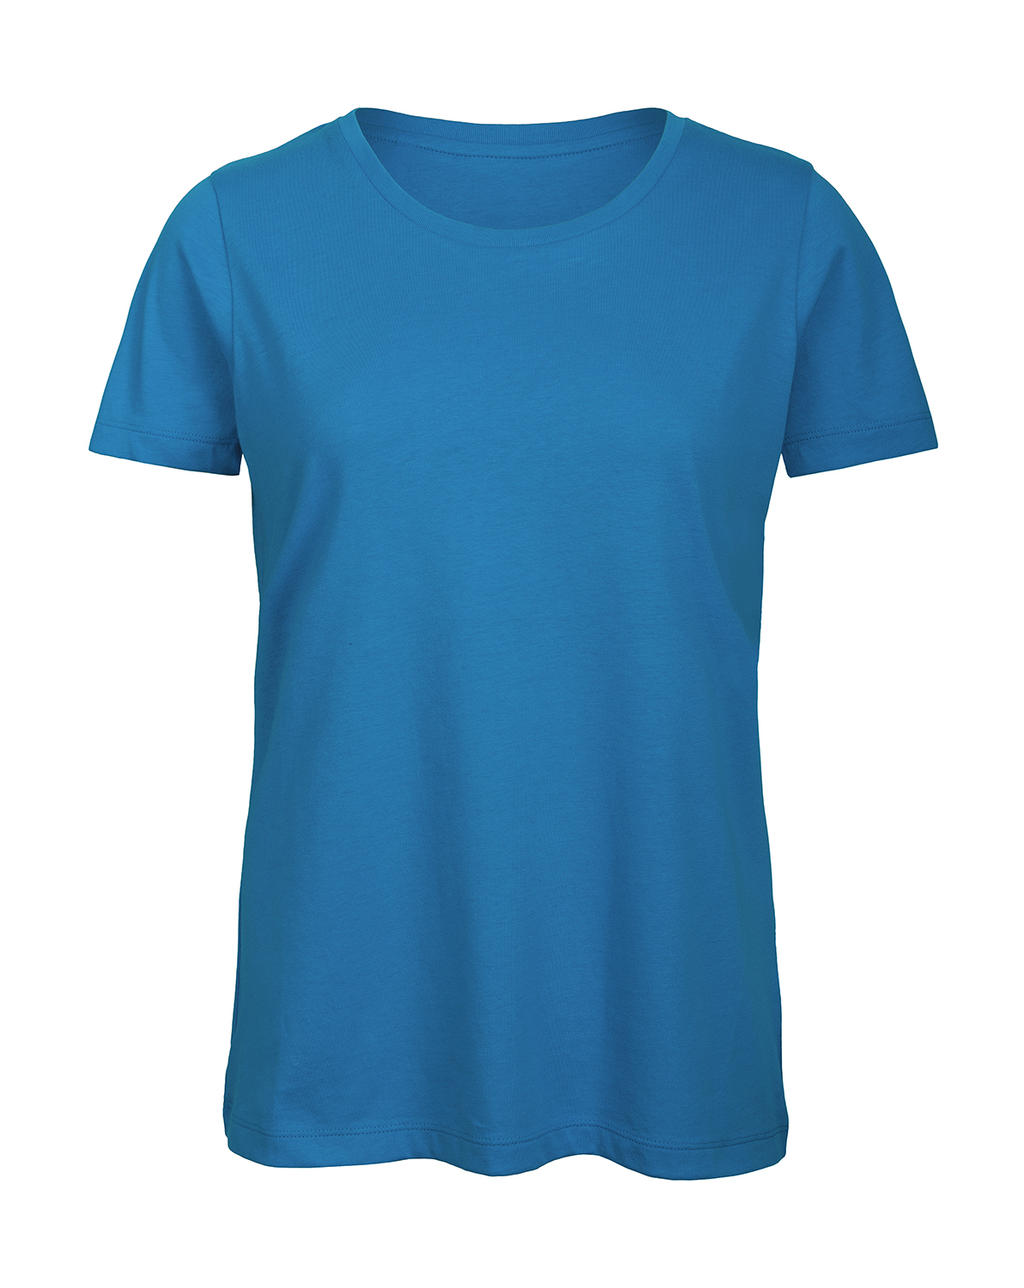 Tričko dámské B&C Jersey - světle modré, S